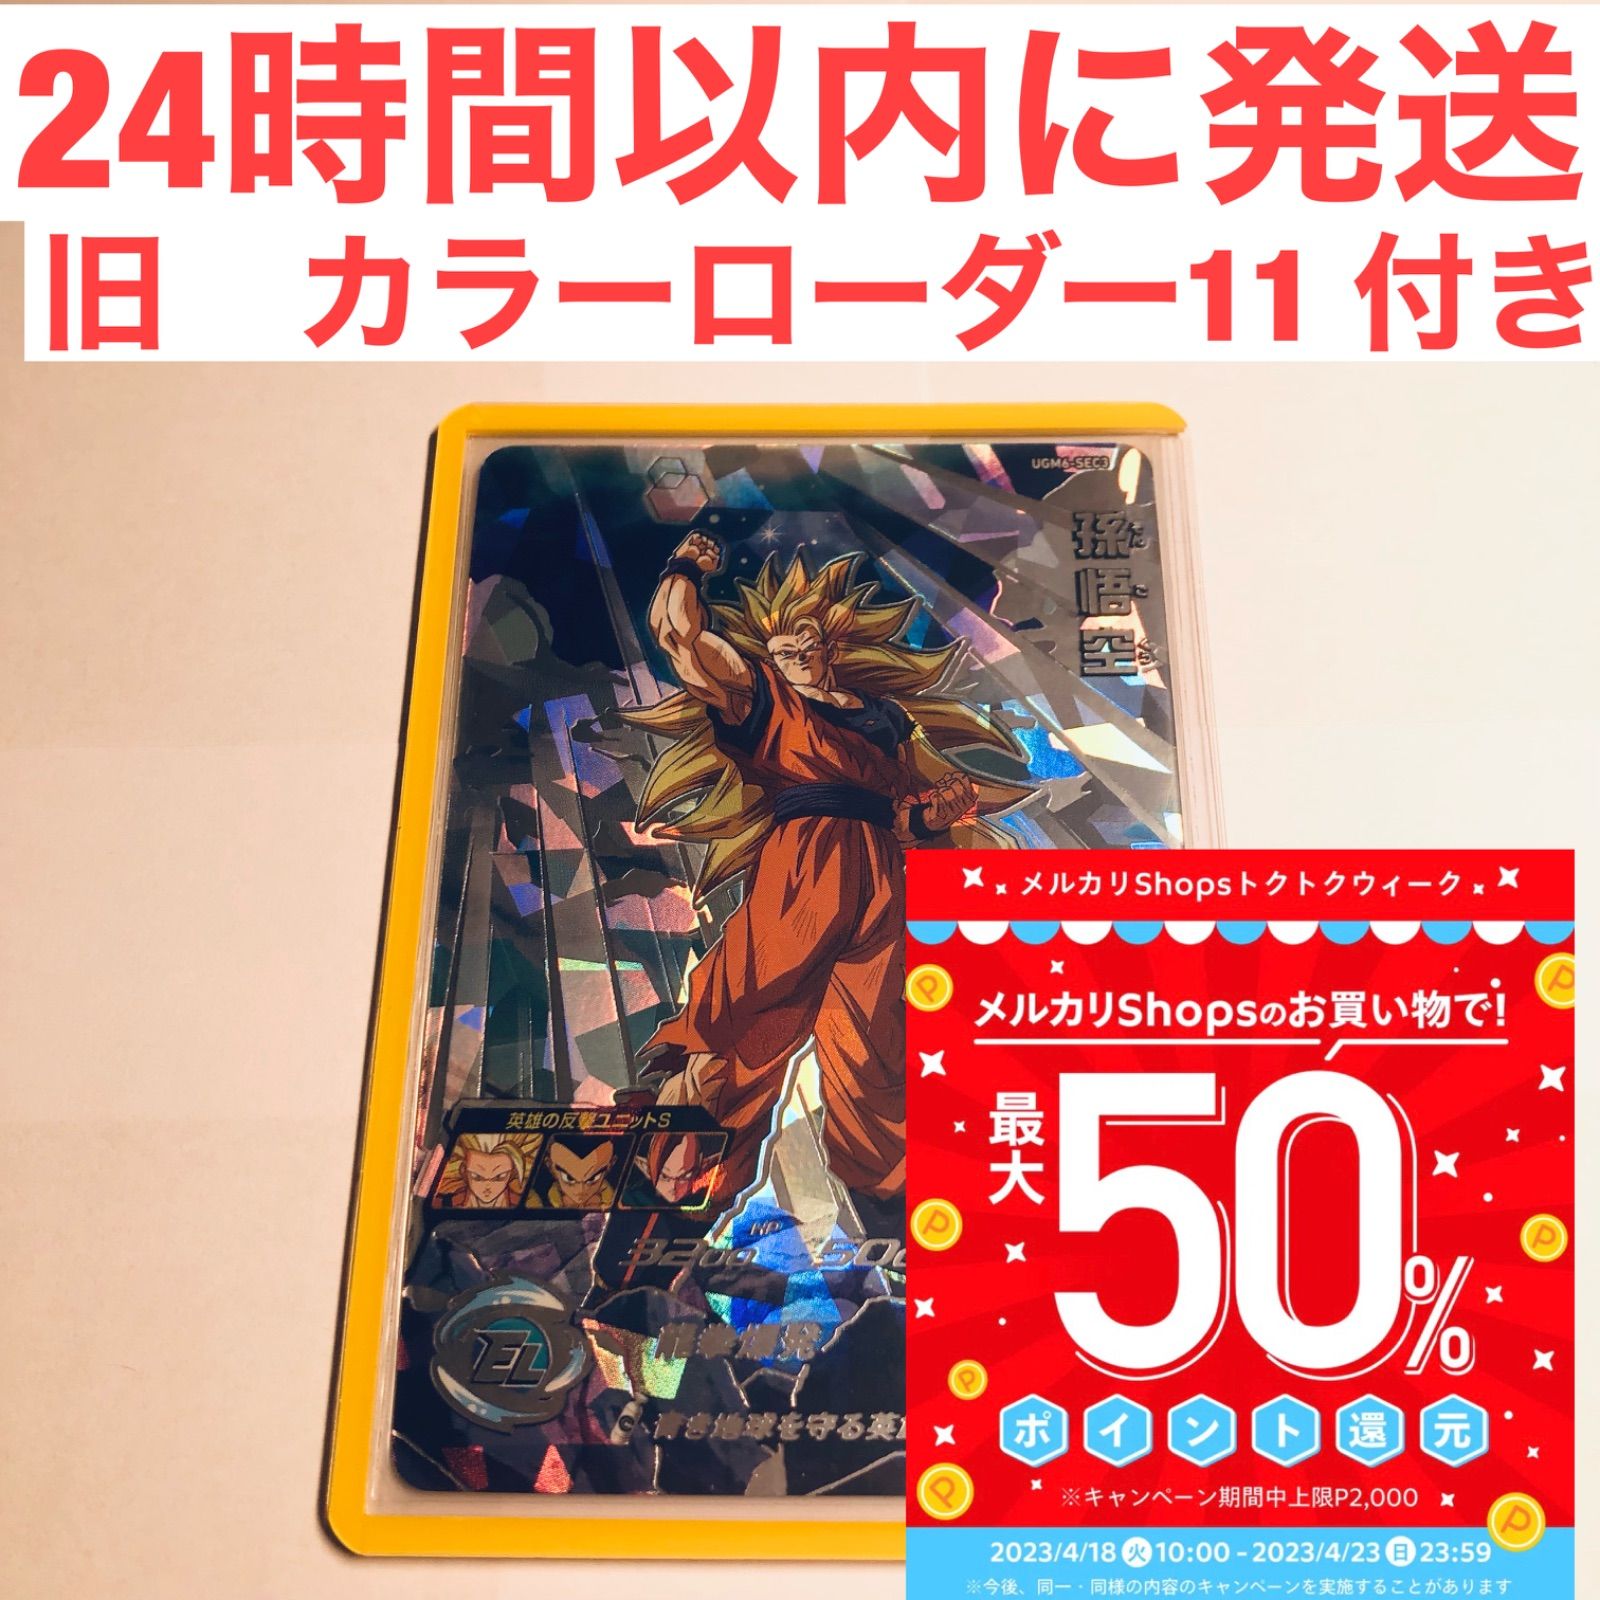 ugm6-sec3 UGM6-SEC3 龍拳悟空 ドラゴンボール カード専門店(無言OK) メルカリ